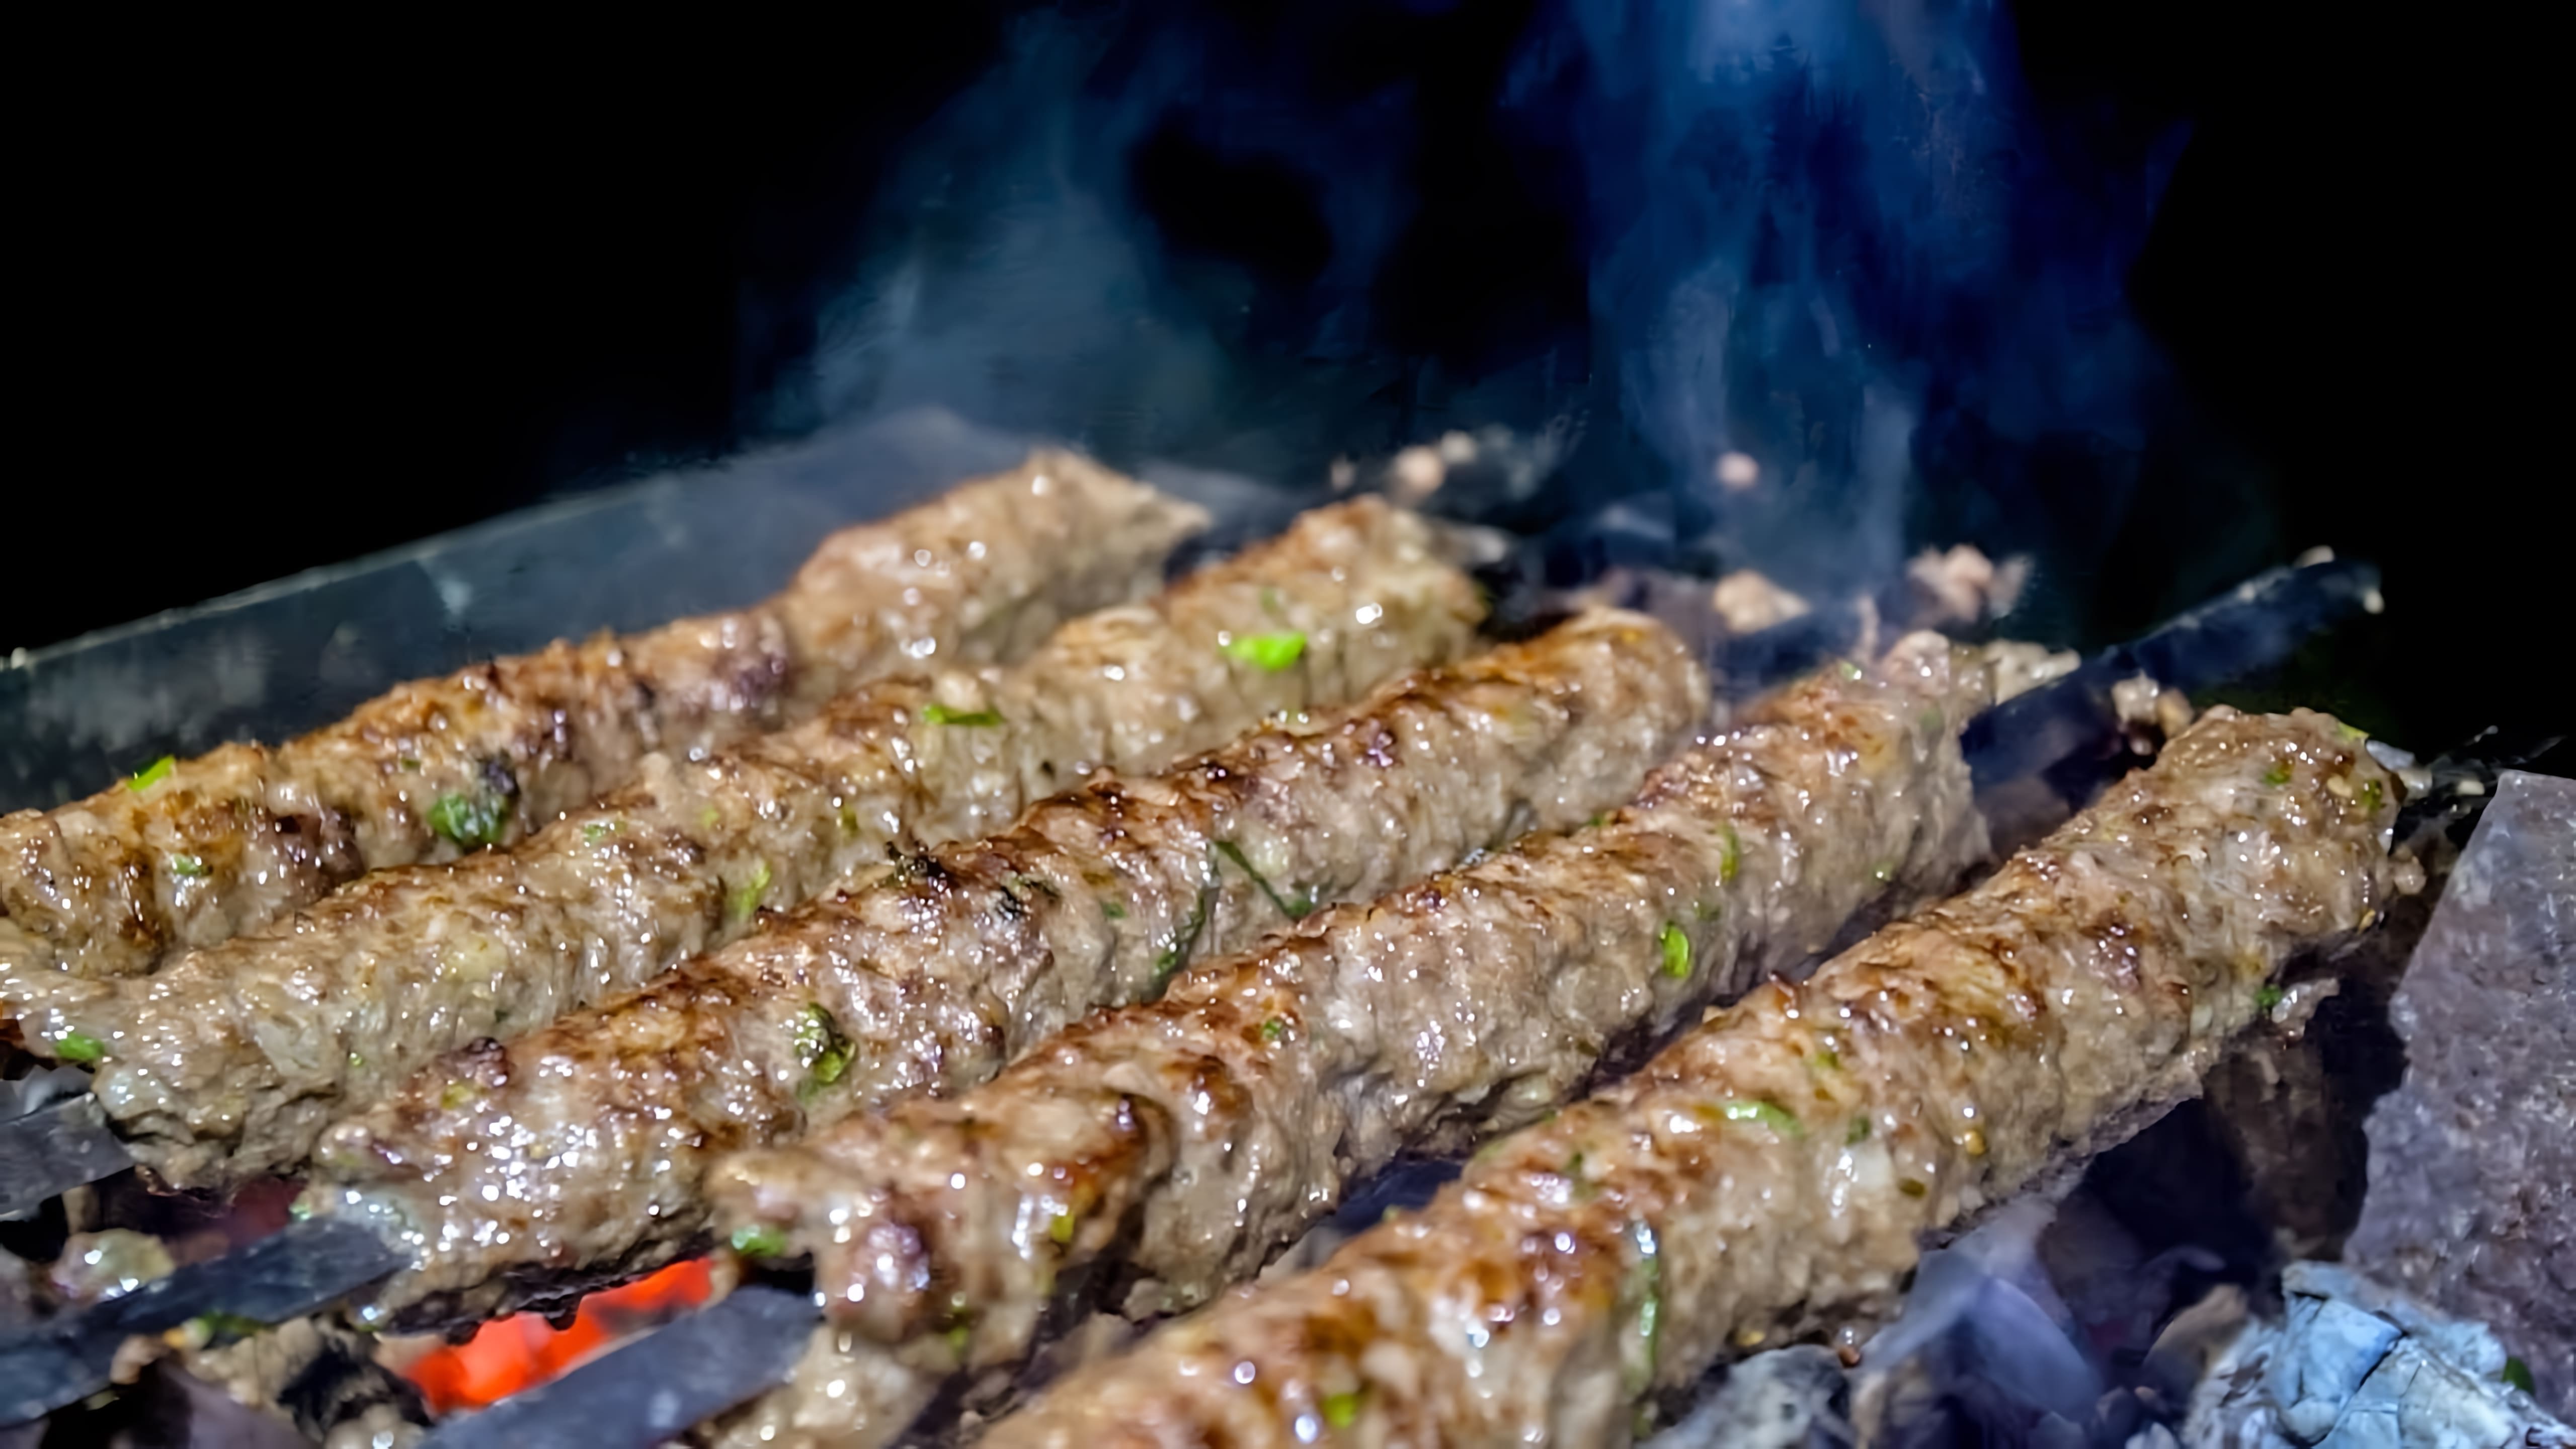 Видео рецепт приготовления луля-кебаба, вида мясного шашлыка, на гриле